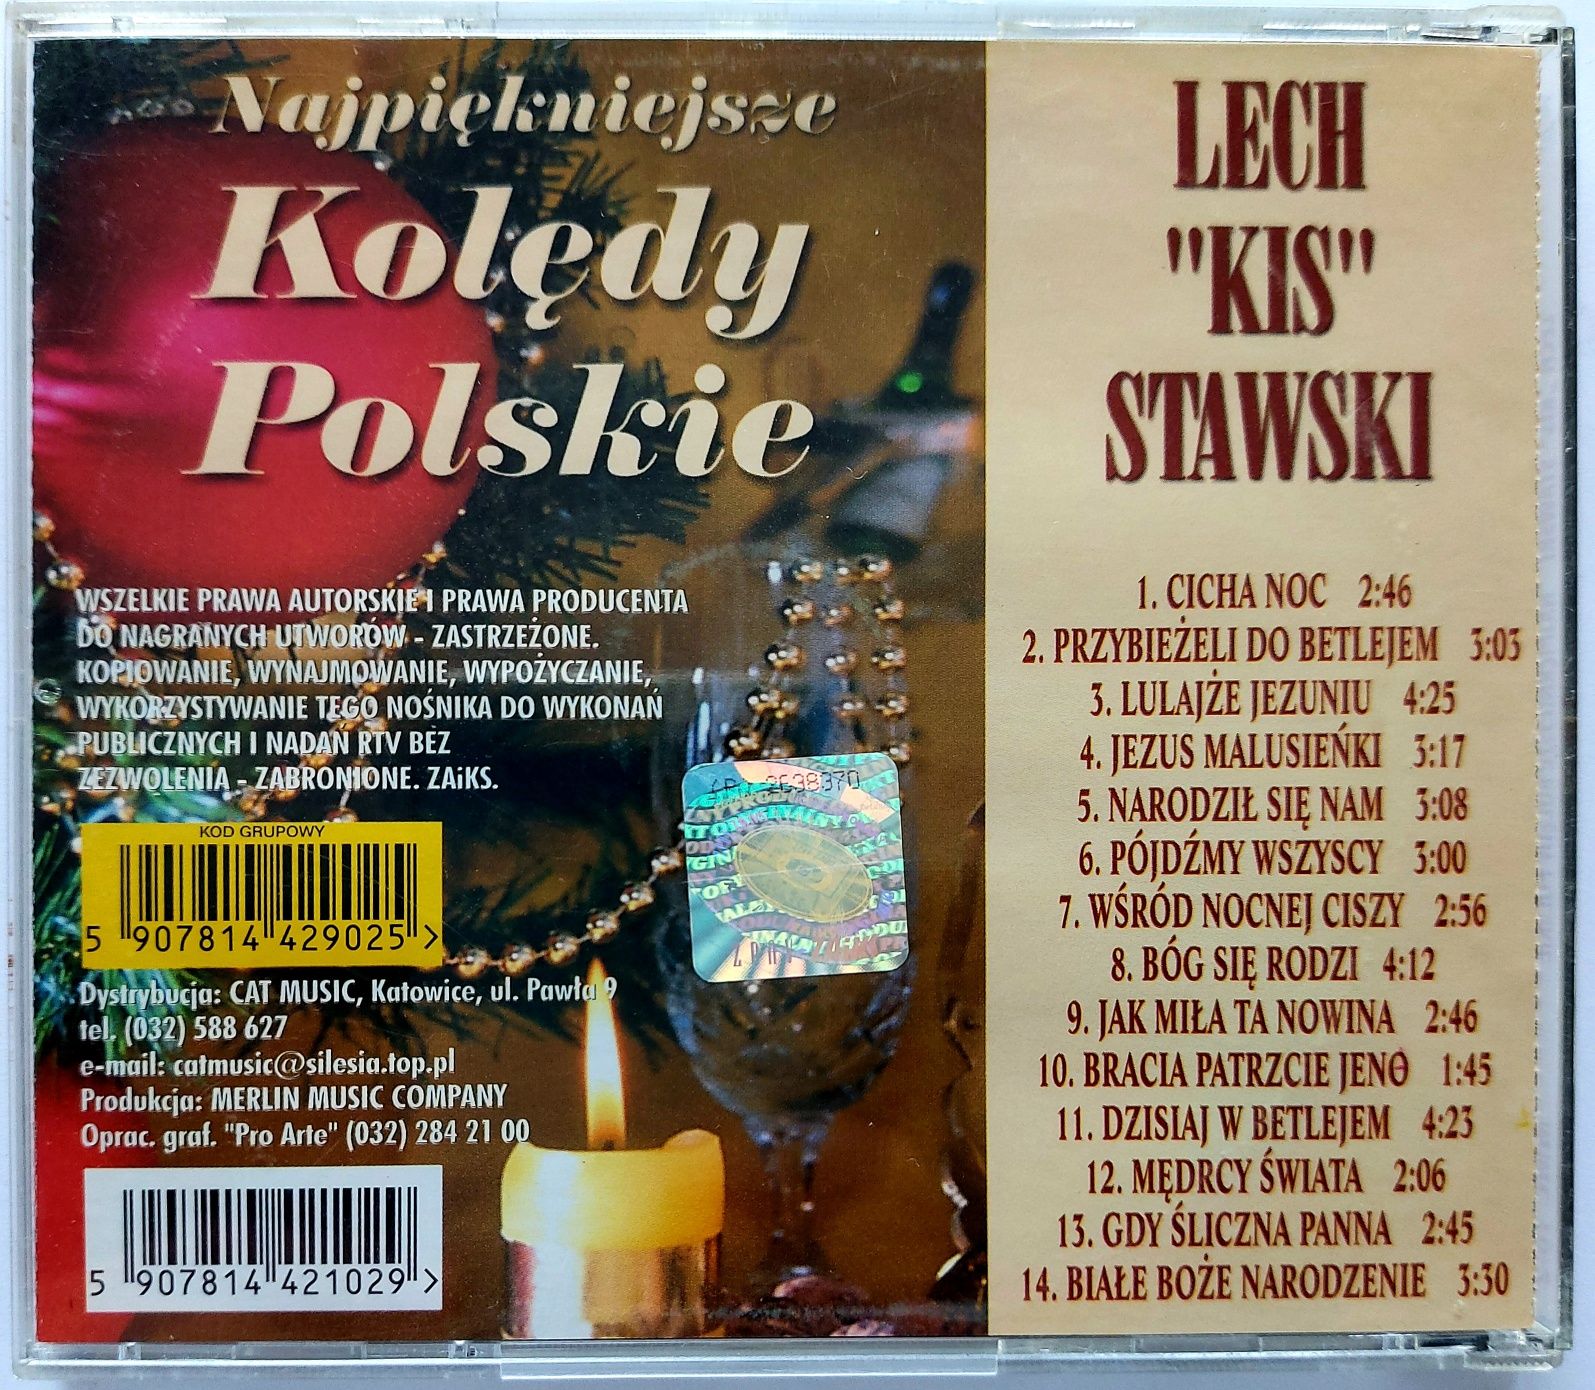 Kolędy Lech Kis Stawski Najpiękniejsze Kolędy Polskie 1999r